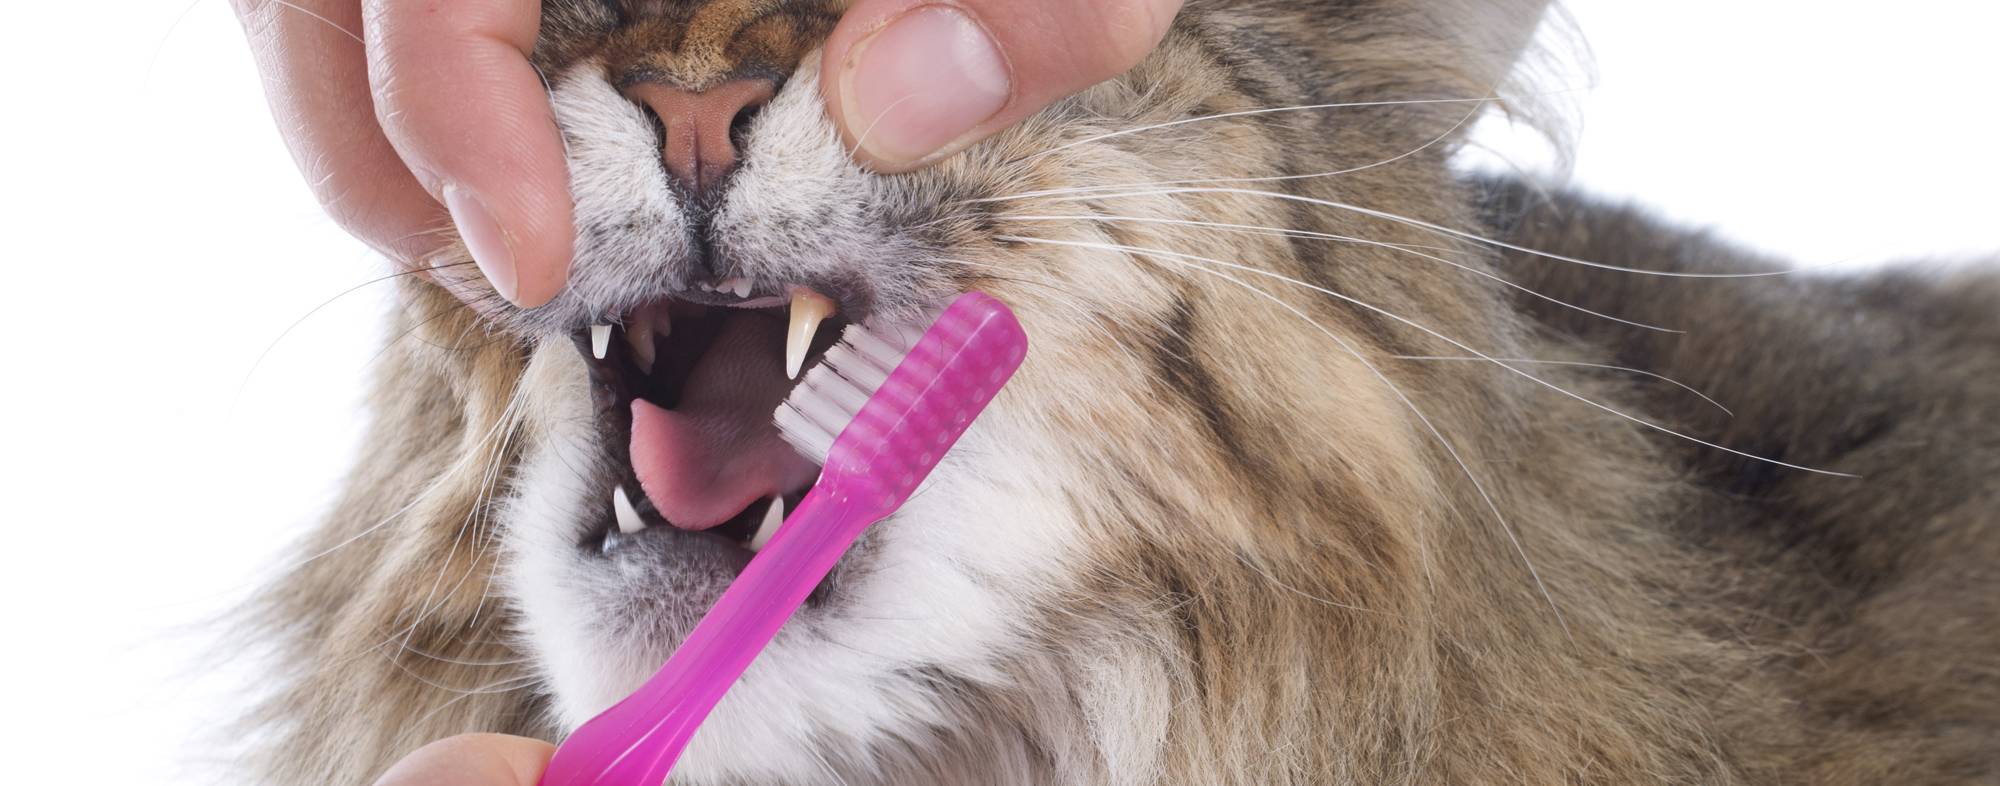 Чистим зубы коту в домашних условиях: средства и секреты